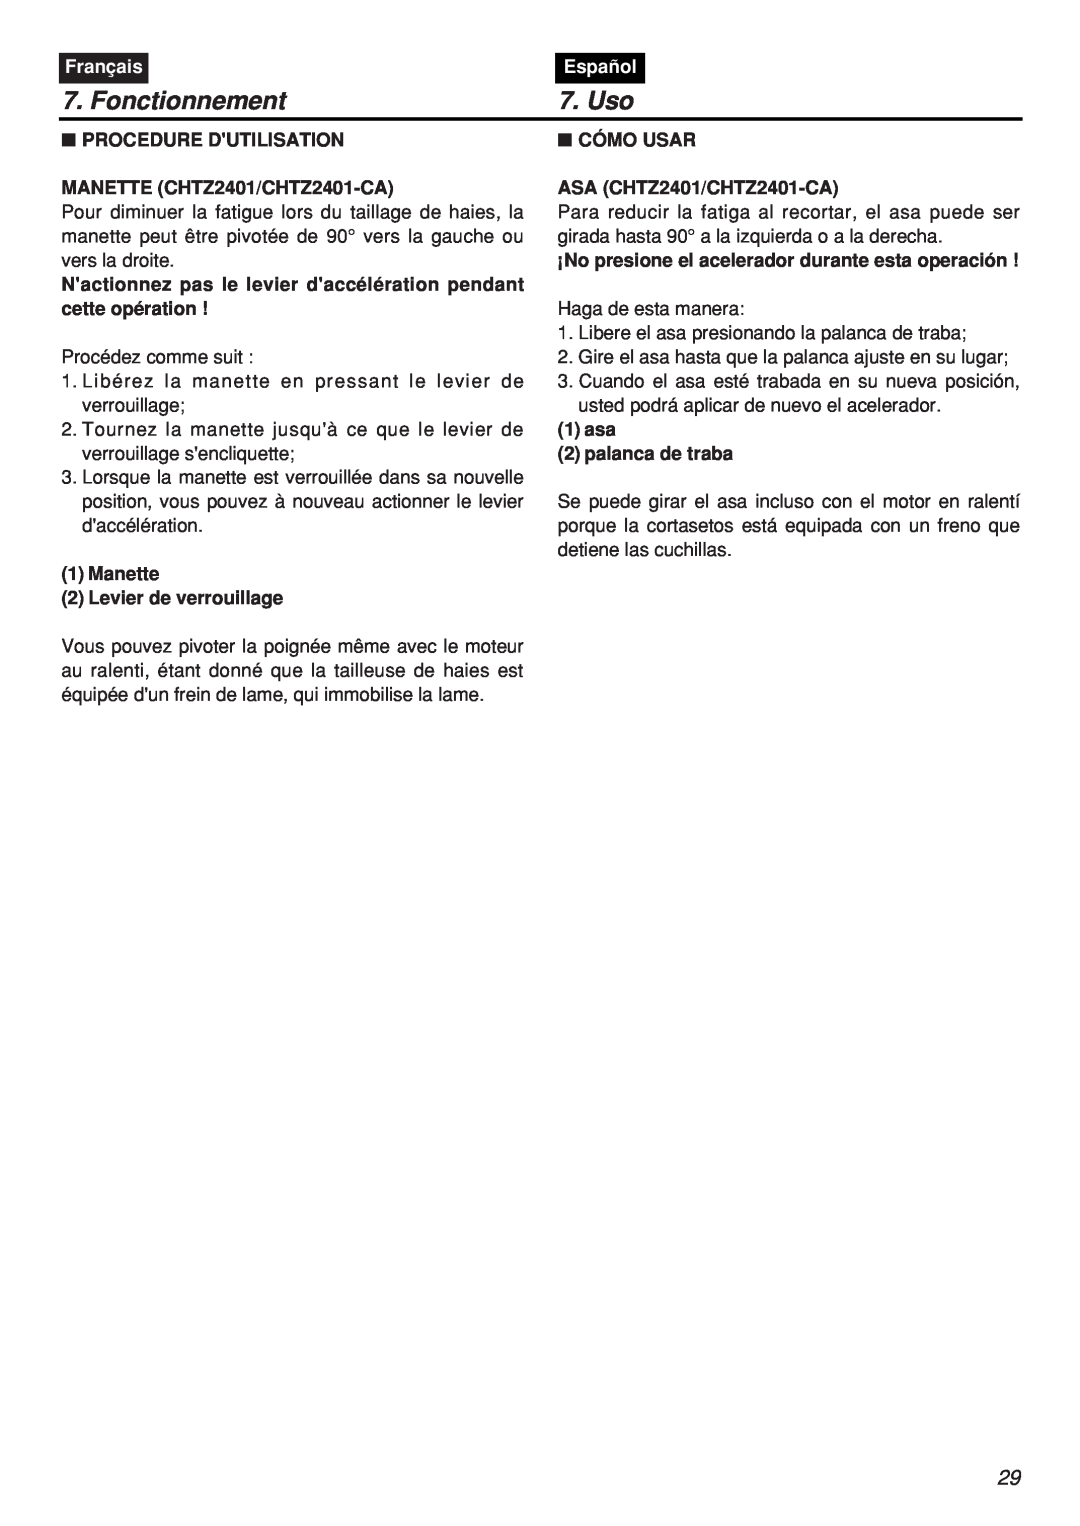 Zenoah HTZ2401L-CA manual Fonctionnement, Uso, Français, Español, PROCEDURE DUTILISATION MANETTE CHTZ2401/CHTZ2401-CA 